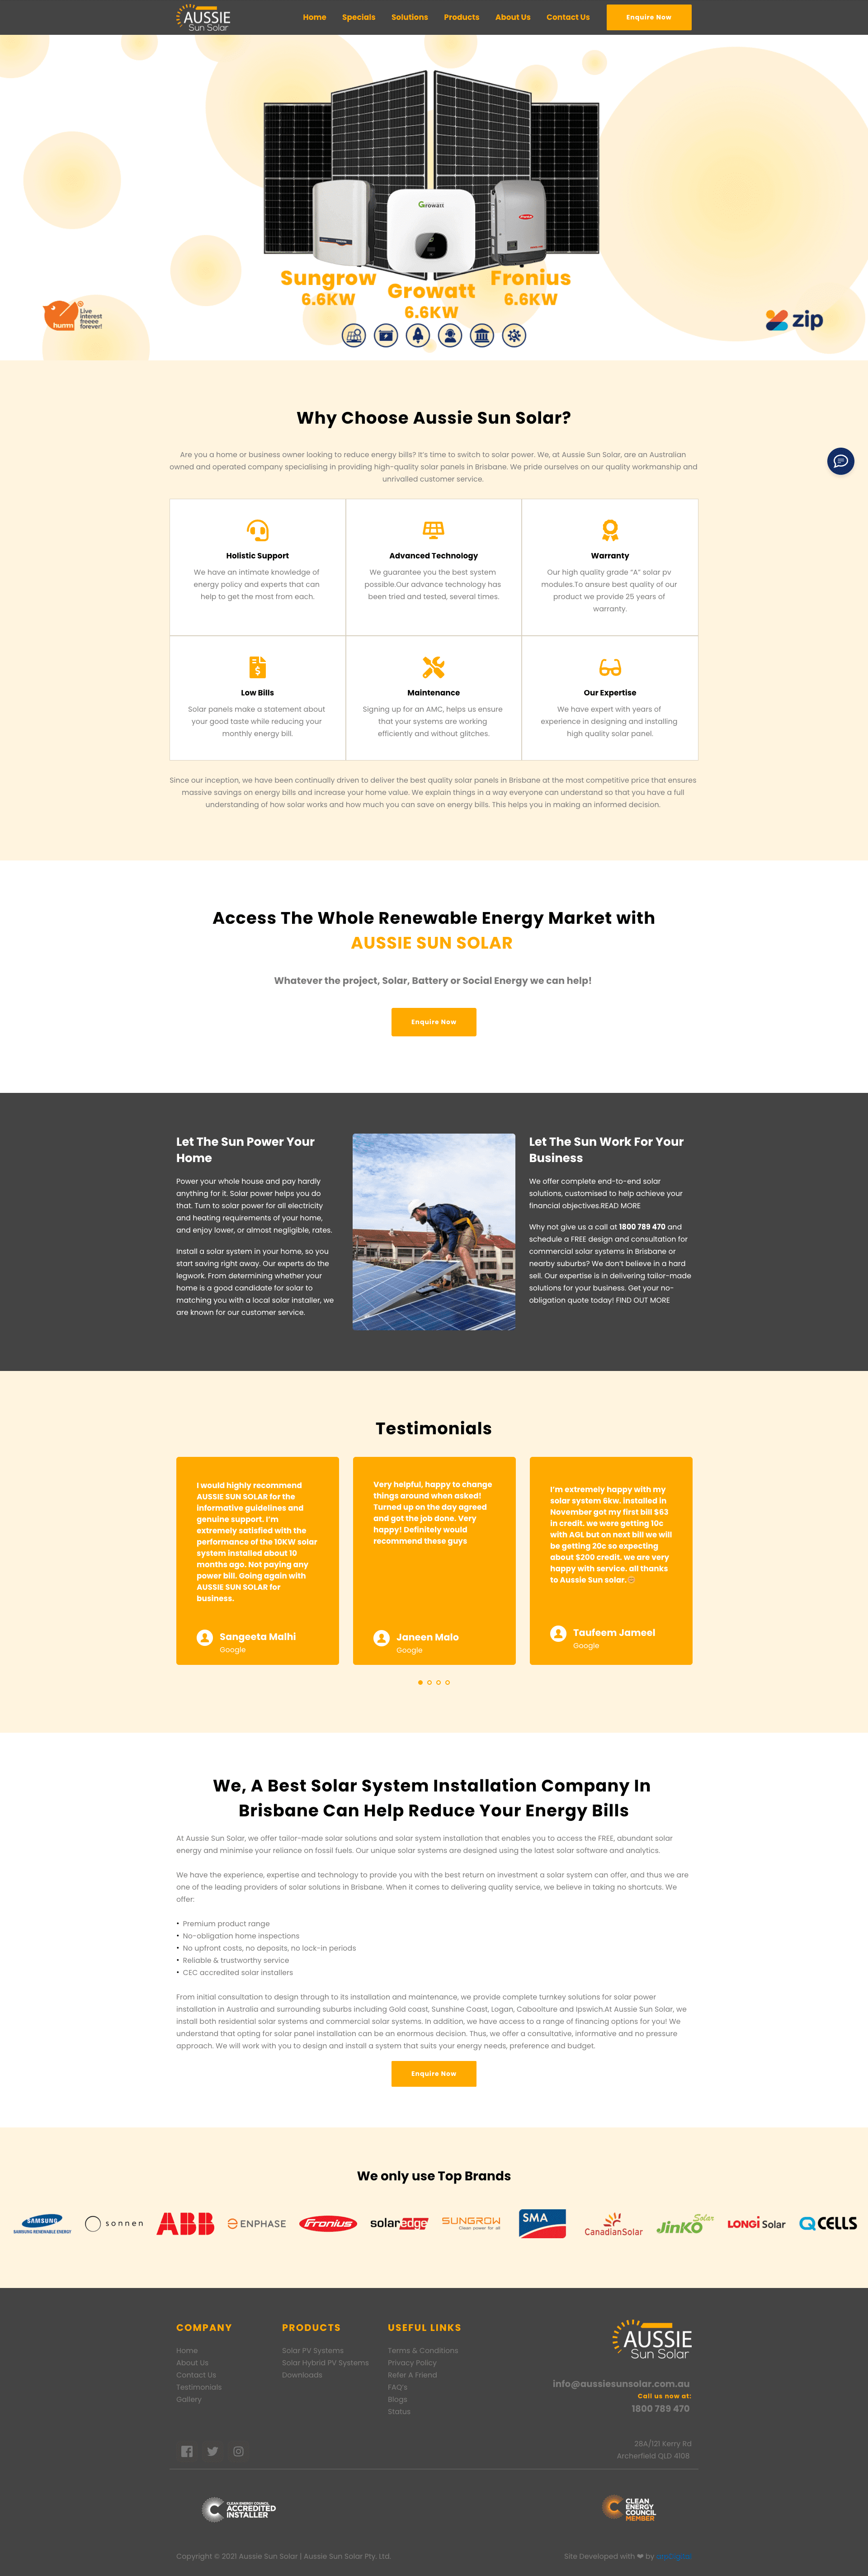 Aussie Sun Solar - Full Website Screenshot